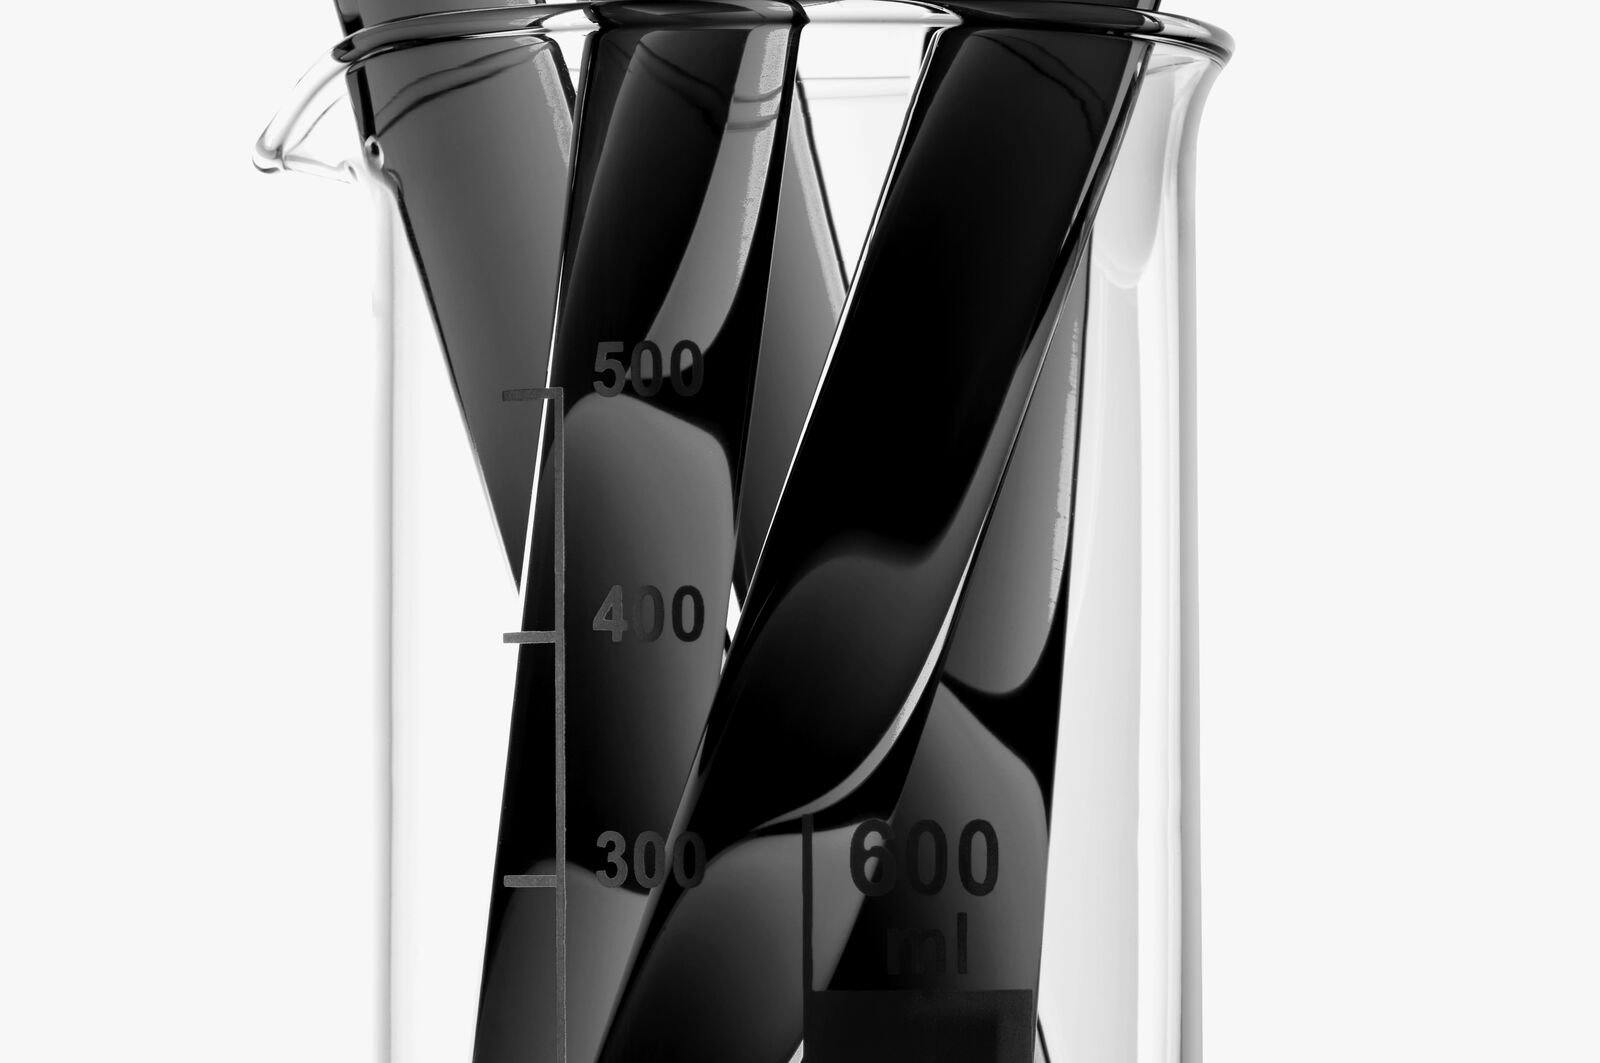 Test tubes in a beaker